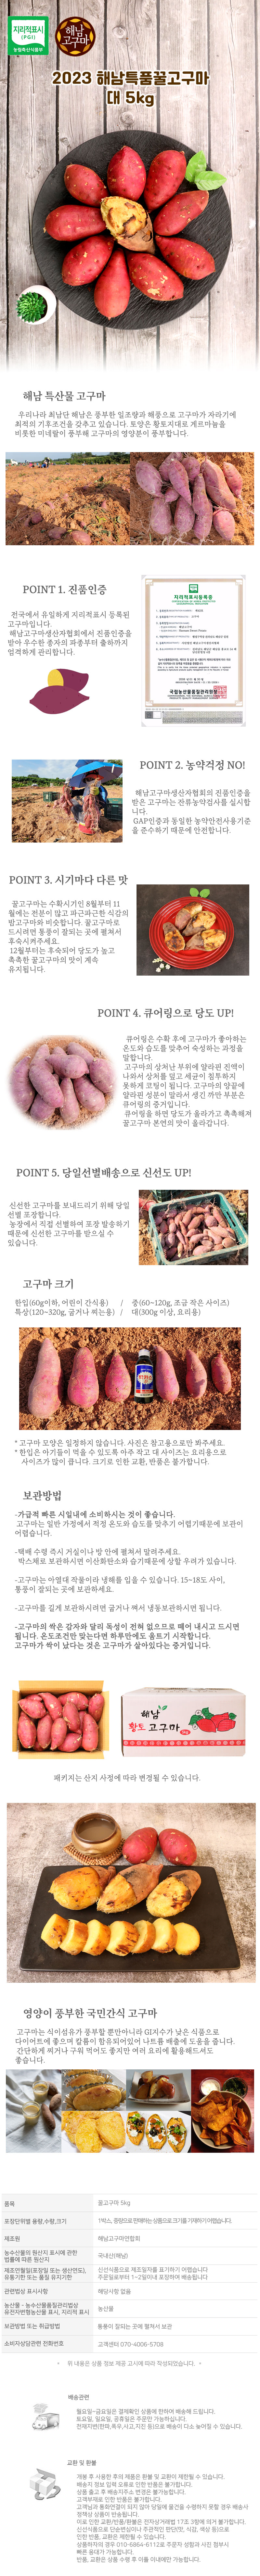 sweetpotato-8.jpg